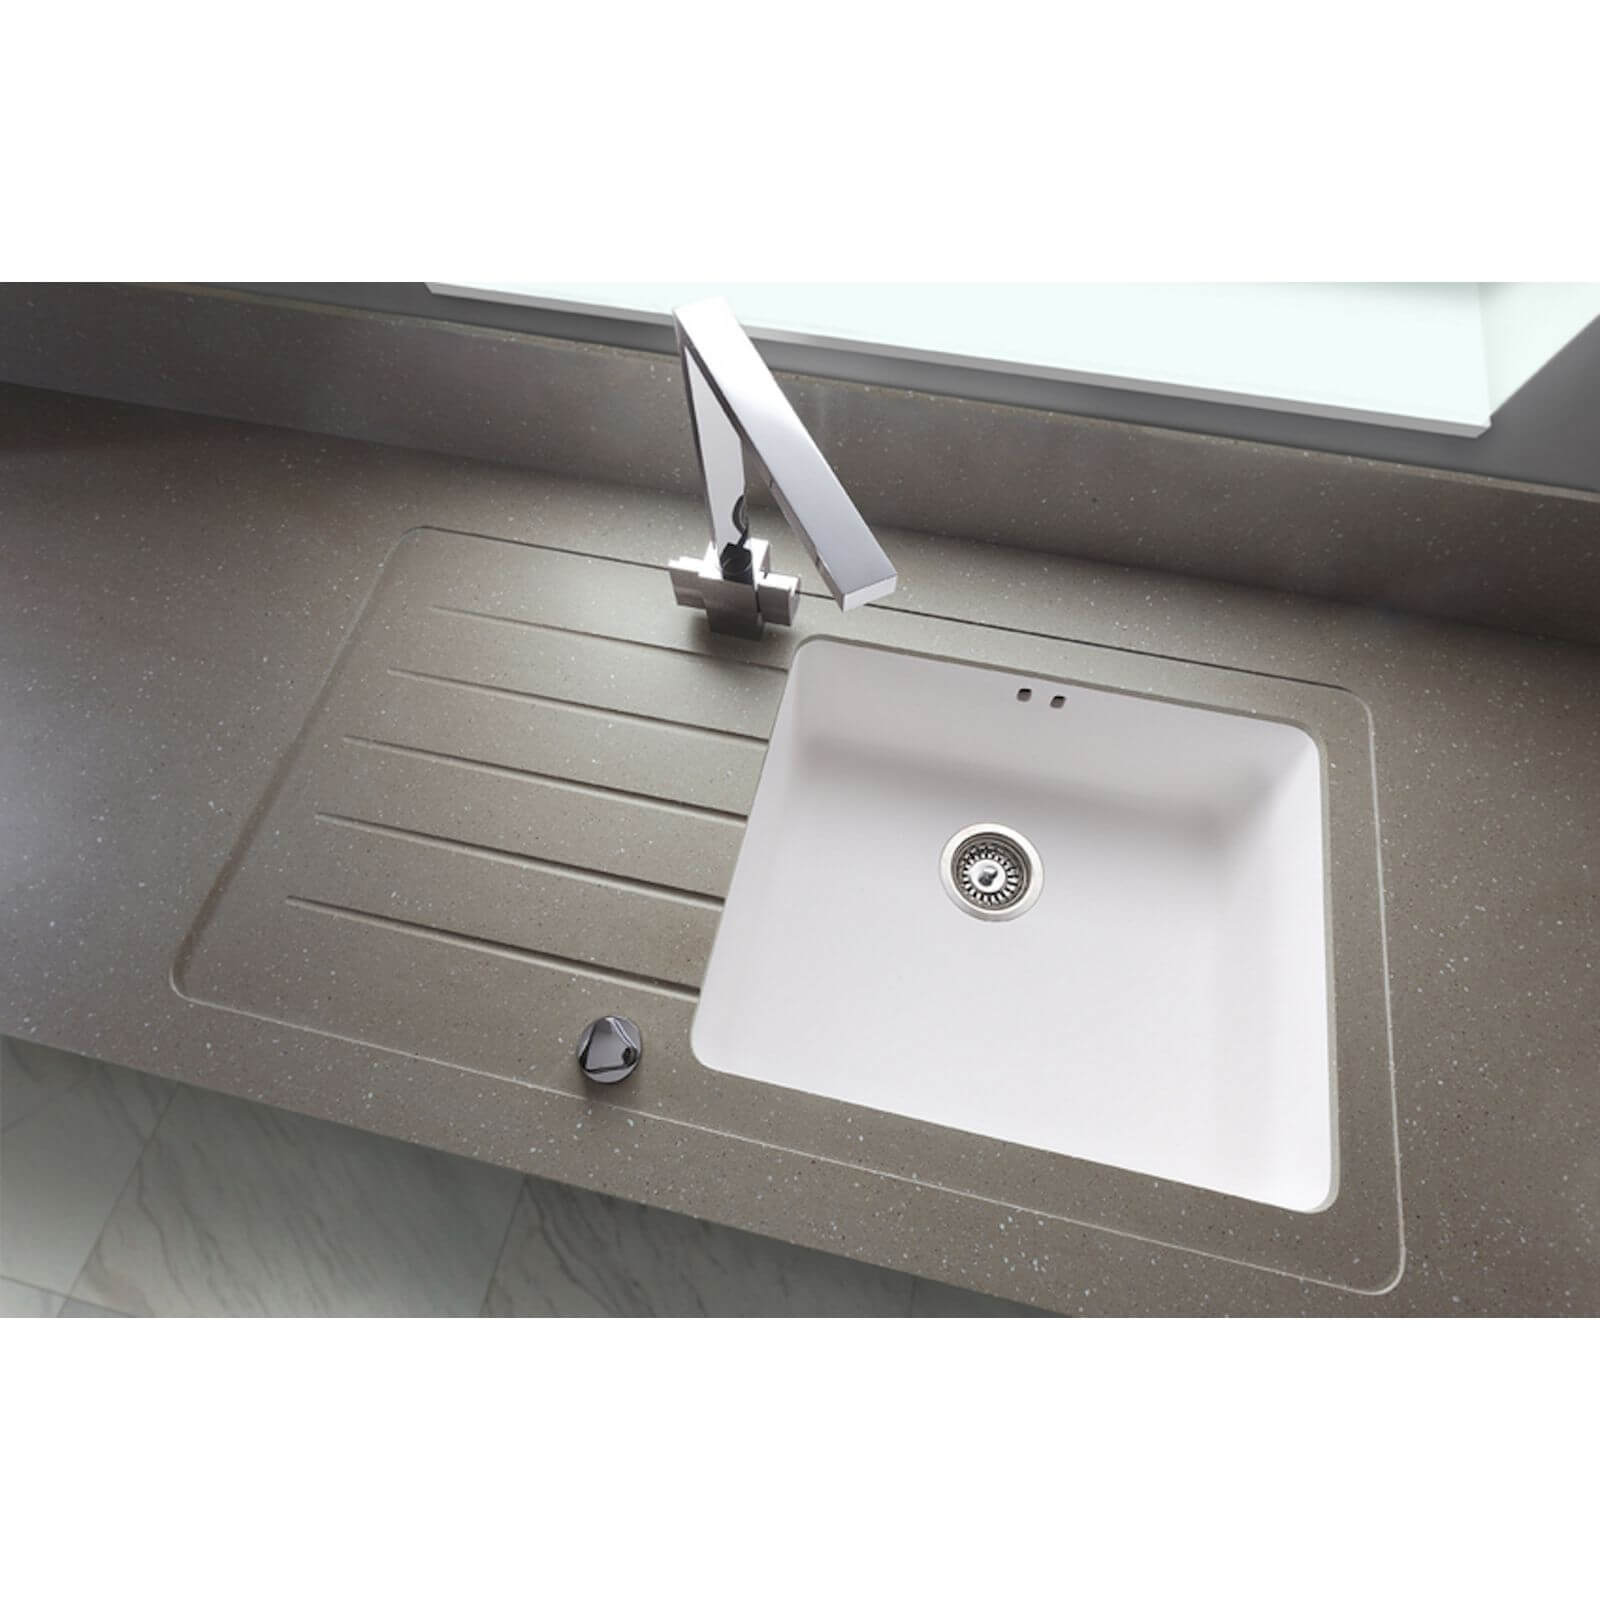 Maia Brazilian Greige Kitchen Sink Worktop - 1.5 Designer Right Hand Bowl - 3600 x 650 x 42mm